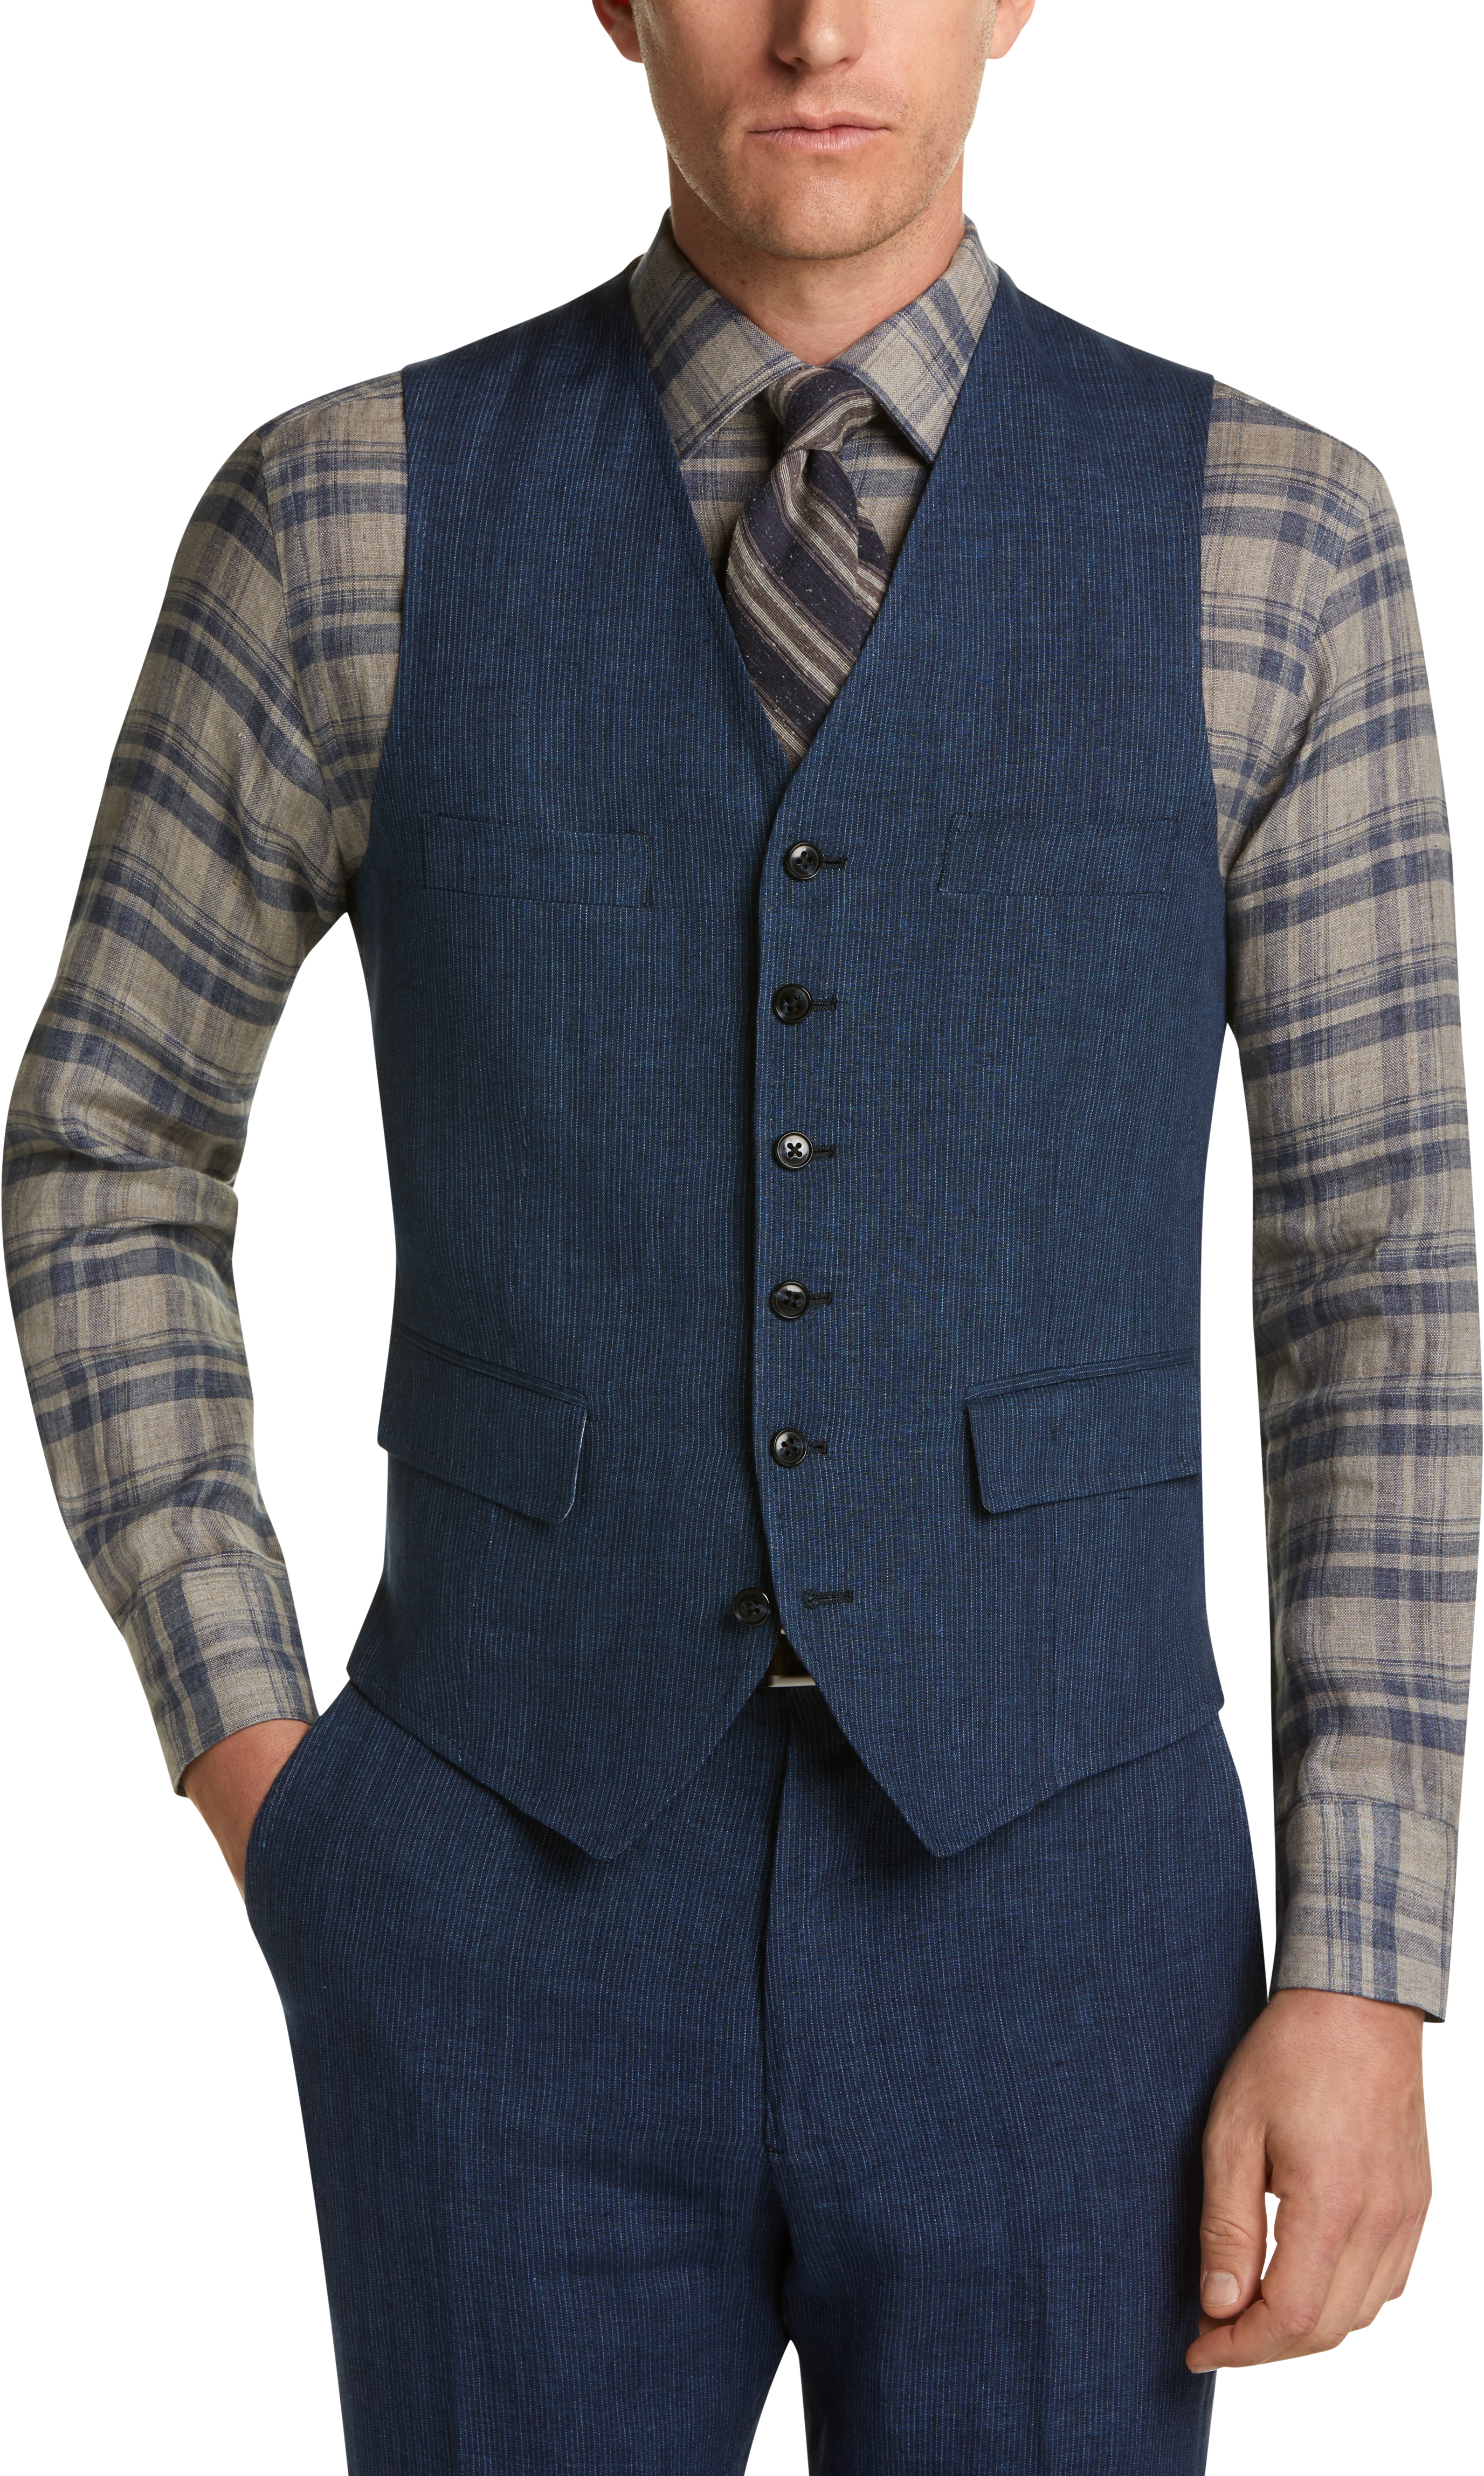 Joseph Abboud Collection Navy Woven Stripe Linen Vest - Men's Suits ...